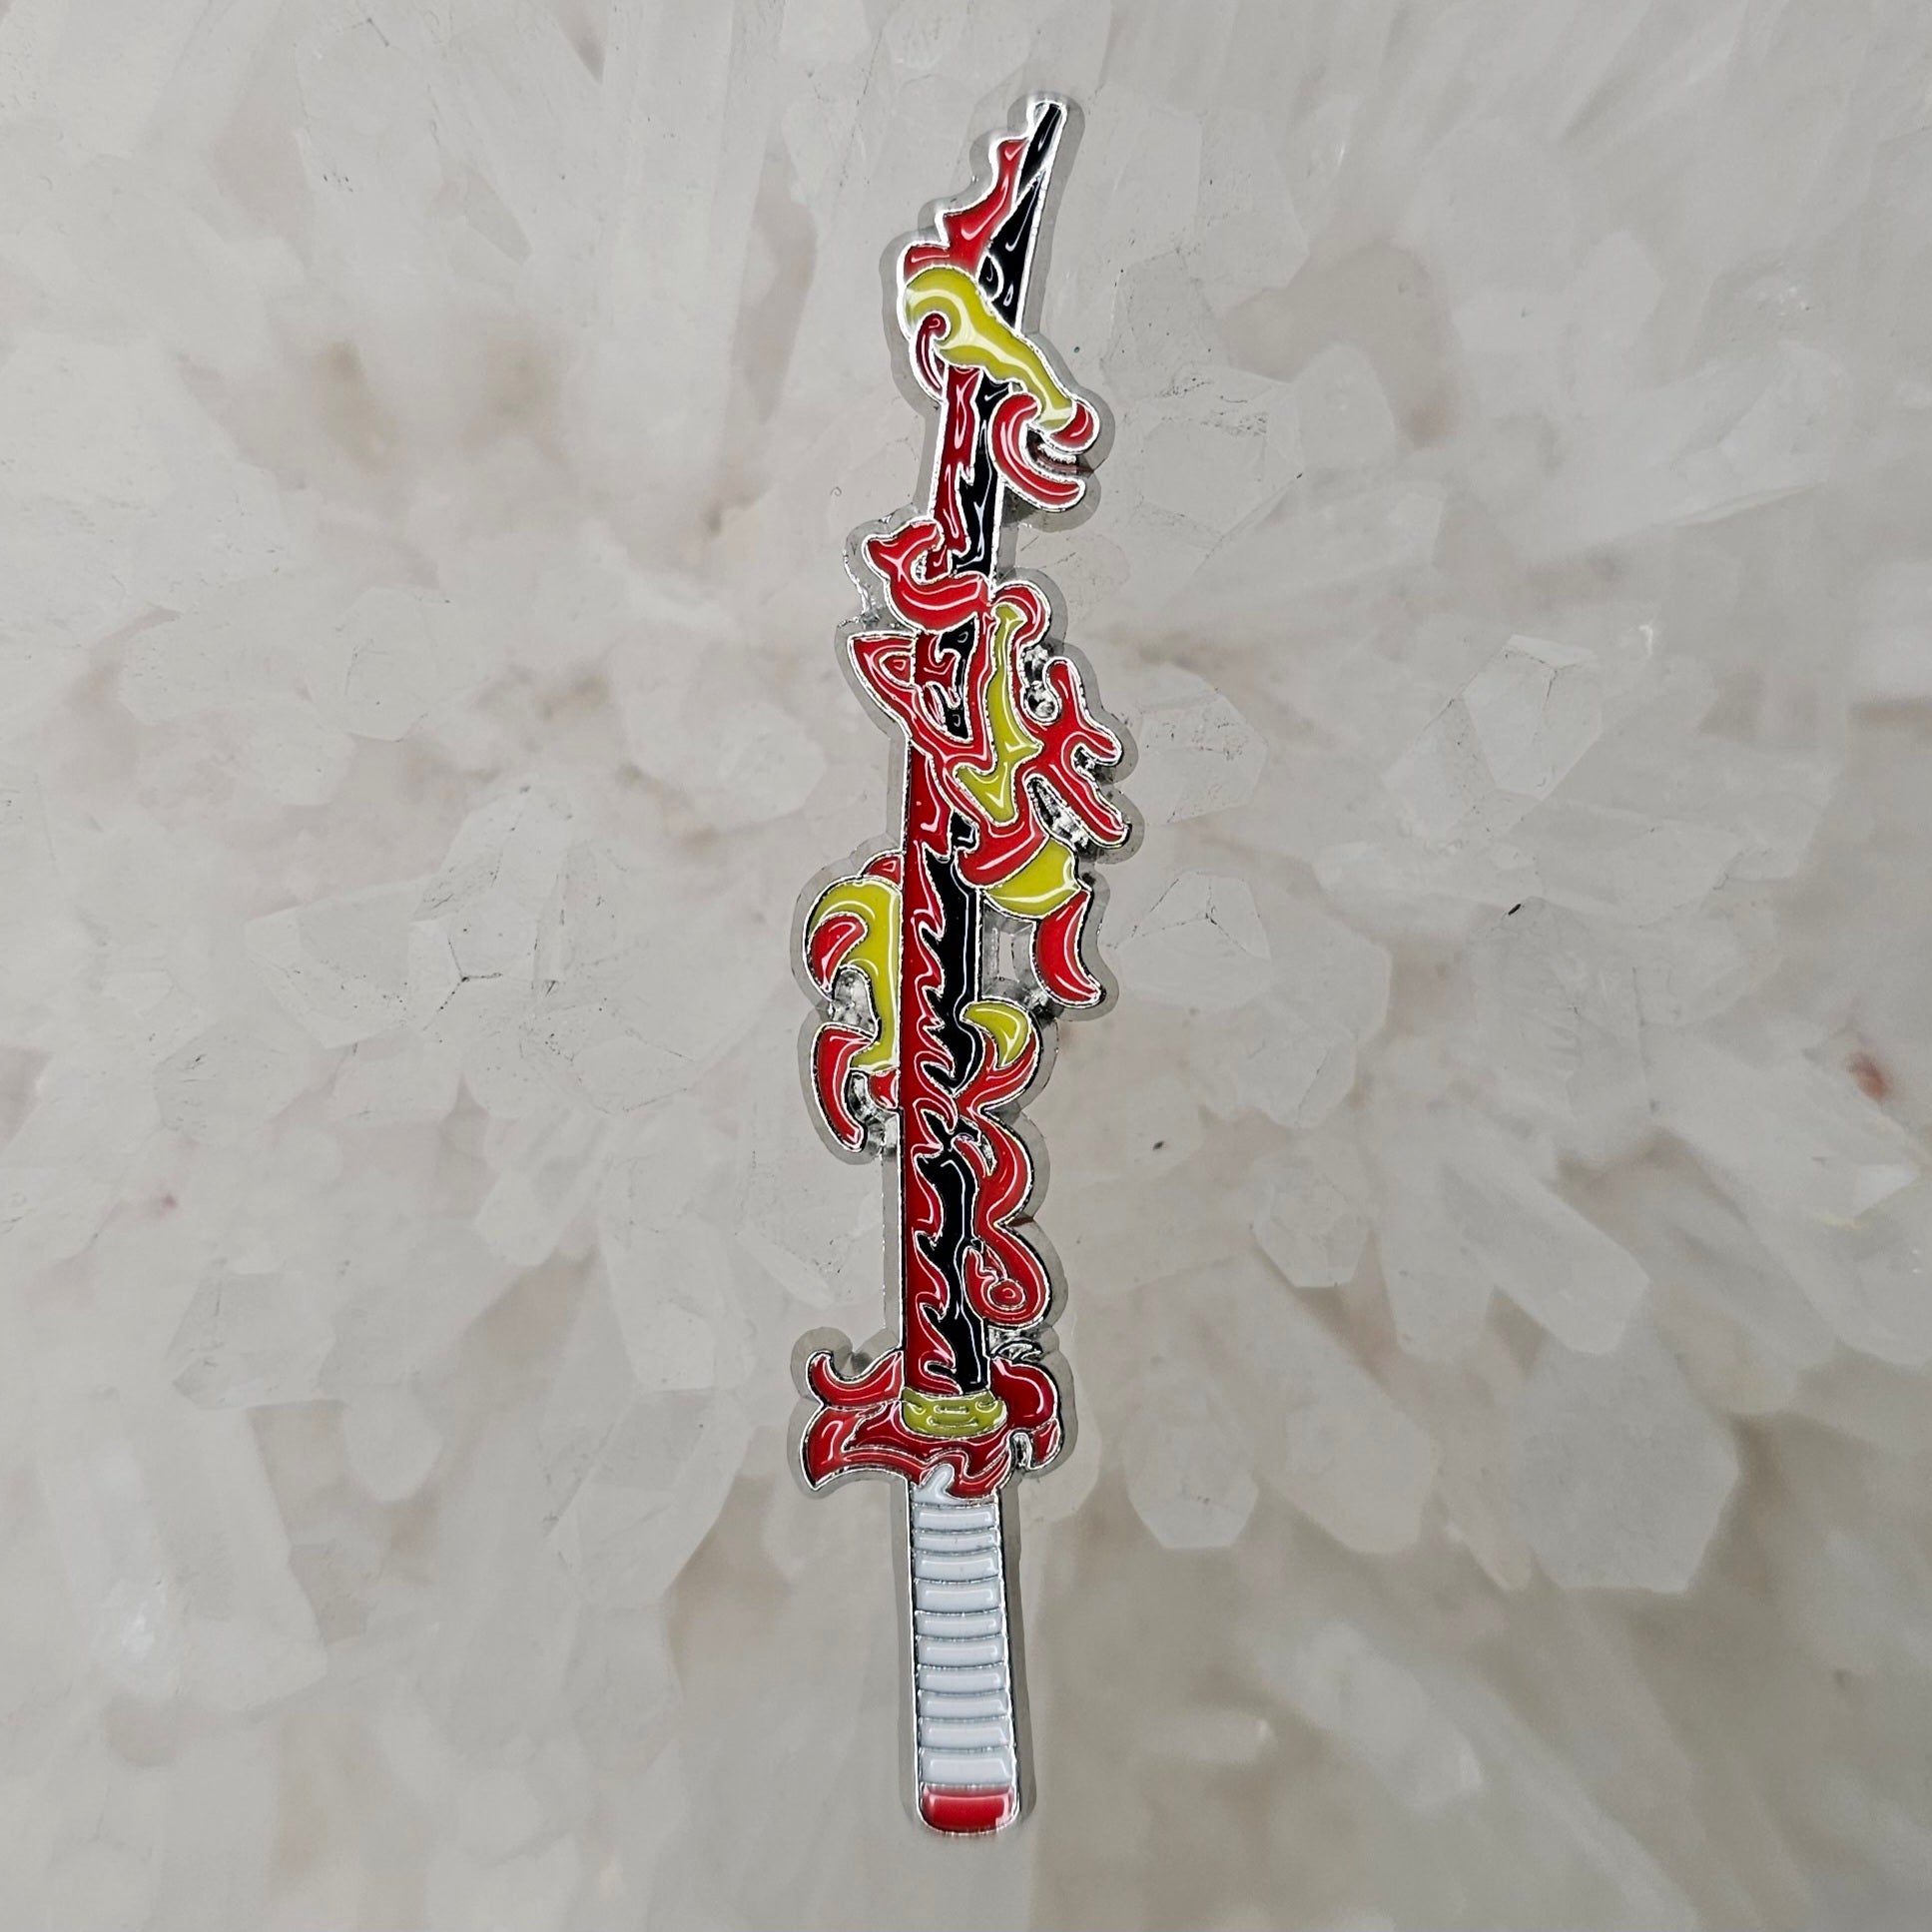 Fire Katana Samurai Sword Manga Cartoon Anime Art Enamel Pins Hat Pins Lapel Pin Brooch Badge Festival Pin